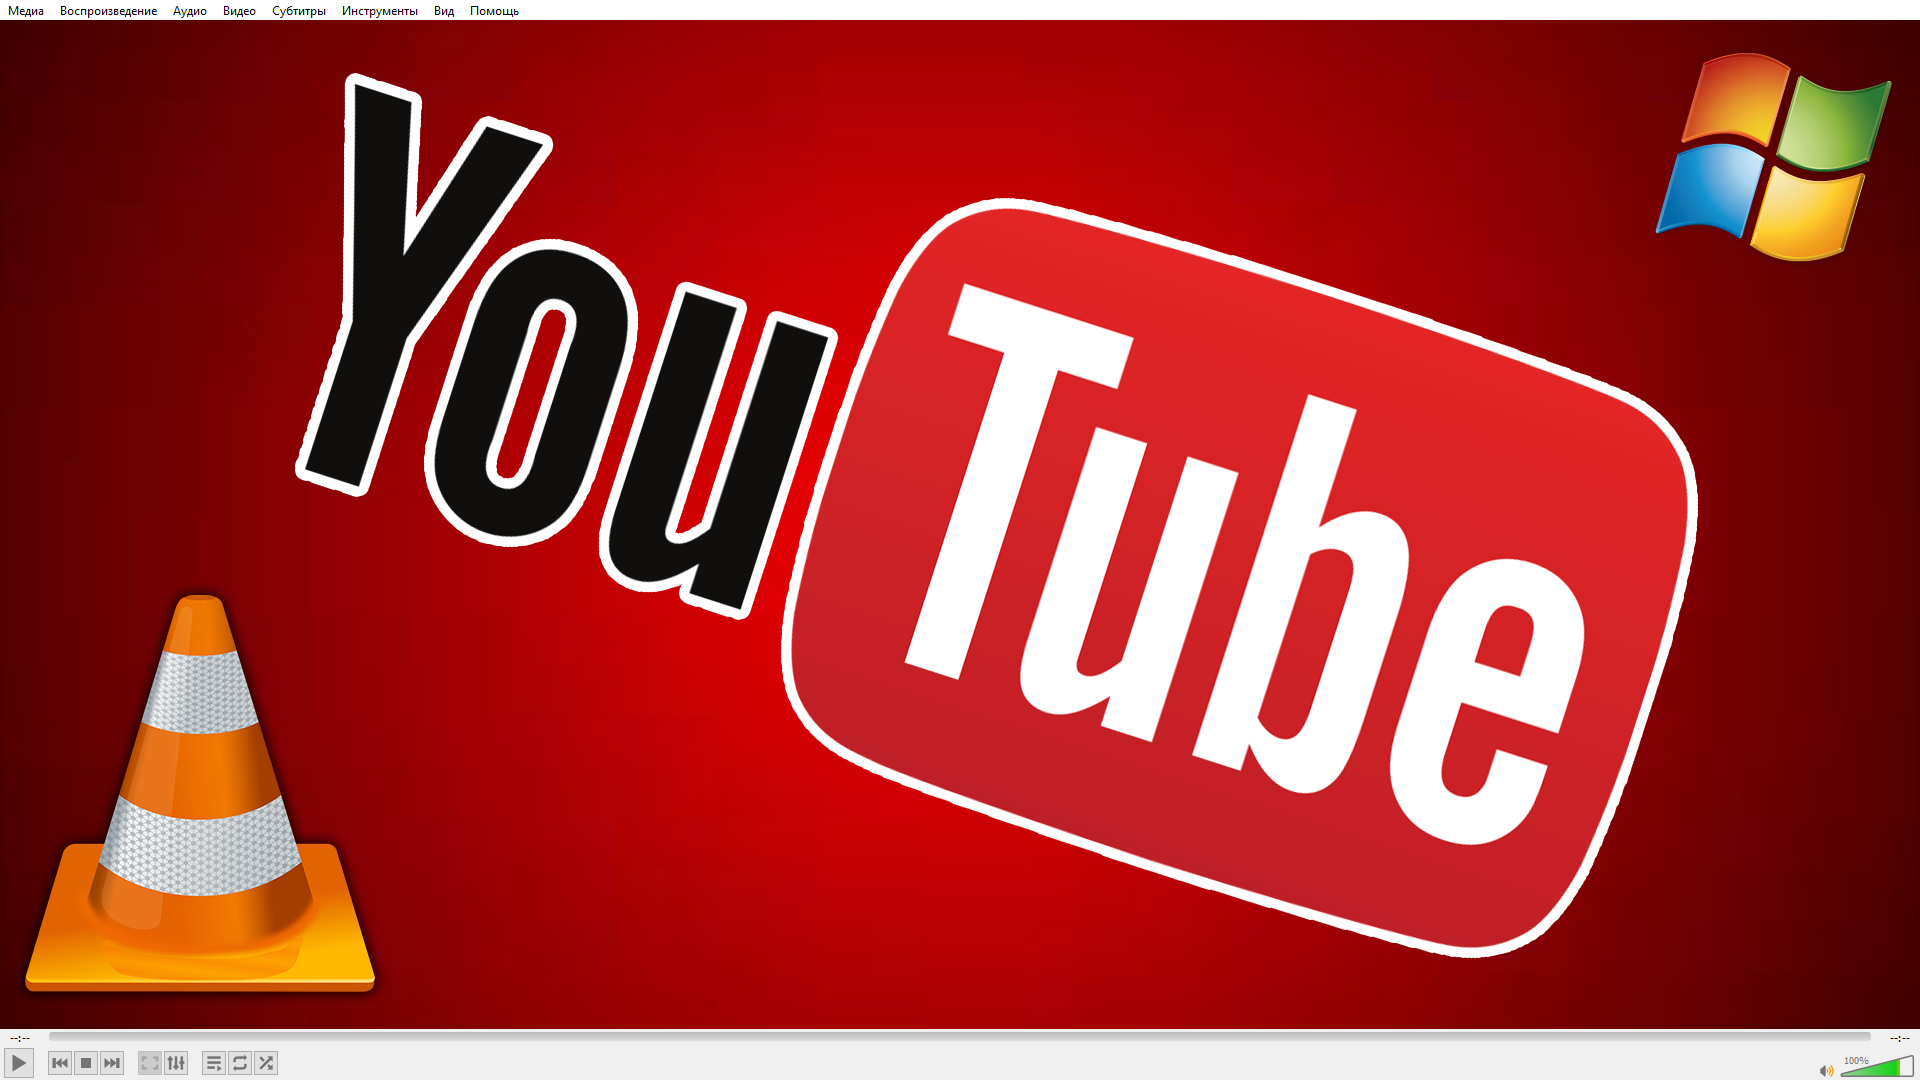 Изображение к статье о скачивании трансляций и видео с Youtube: vlc media player на фоне, поверх логотипы Youtube, VLC и Windows